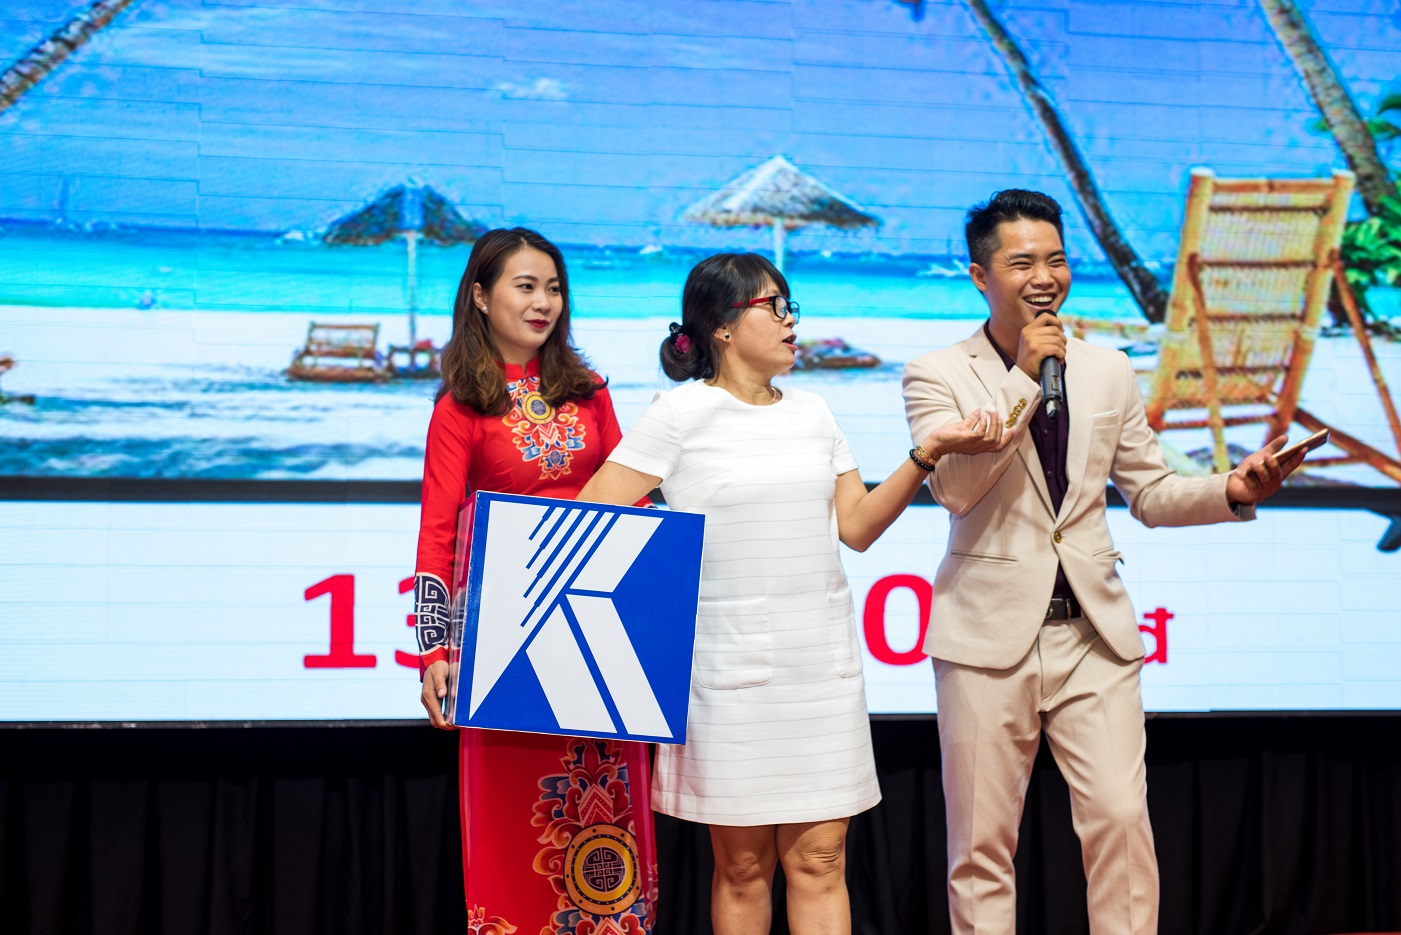 Công ty Thương mại Khatoco tổ chức thành công Hội nghị khách hàng – Khu vực Miền Trung Tây Nguyên năm 2019